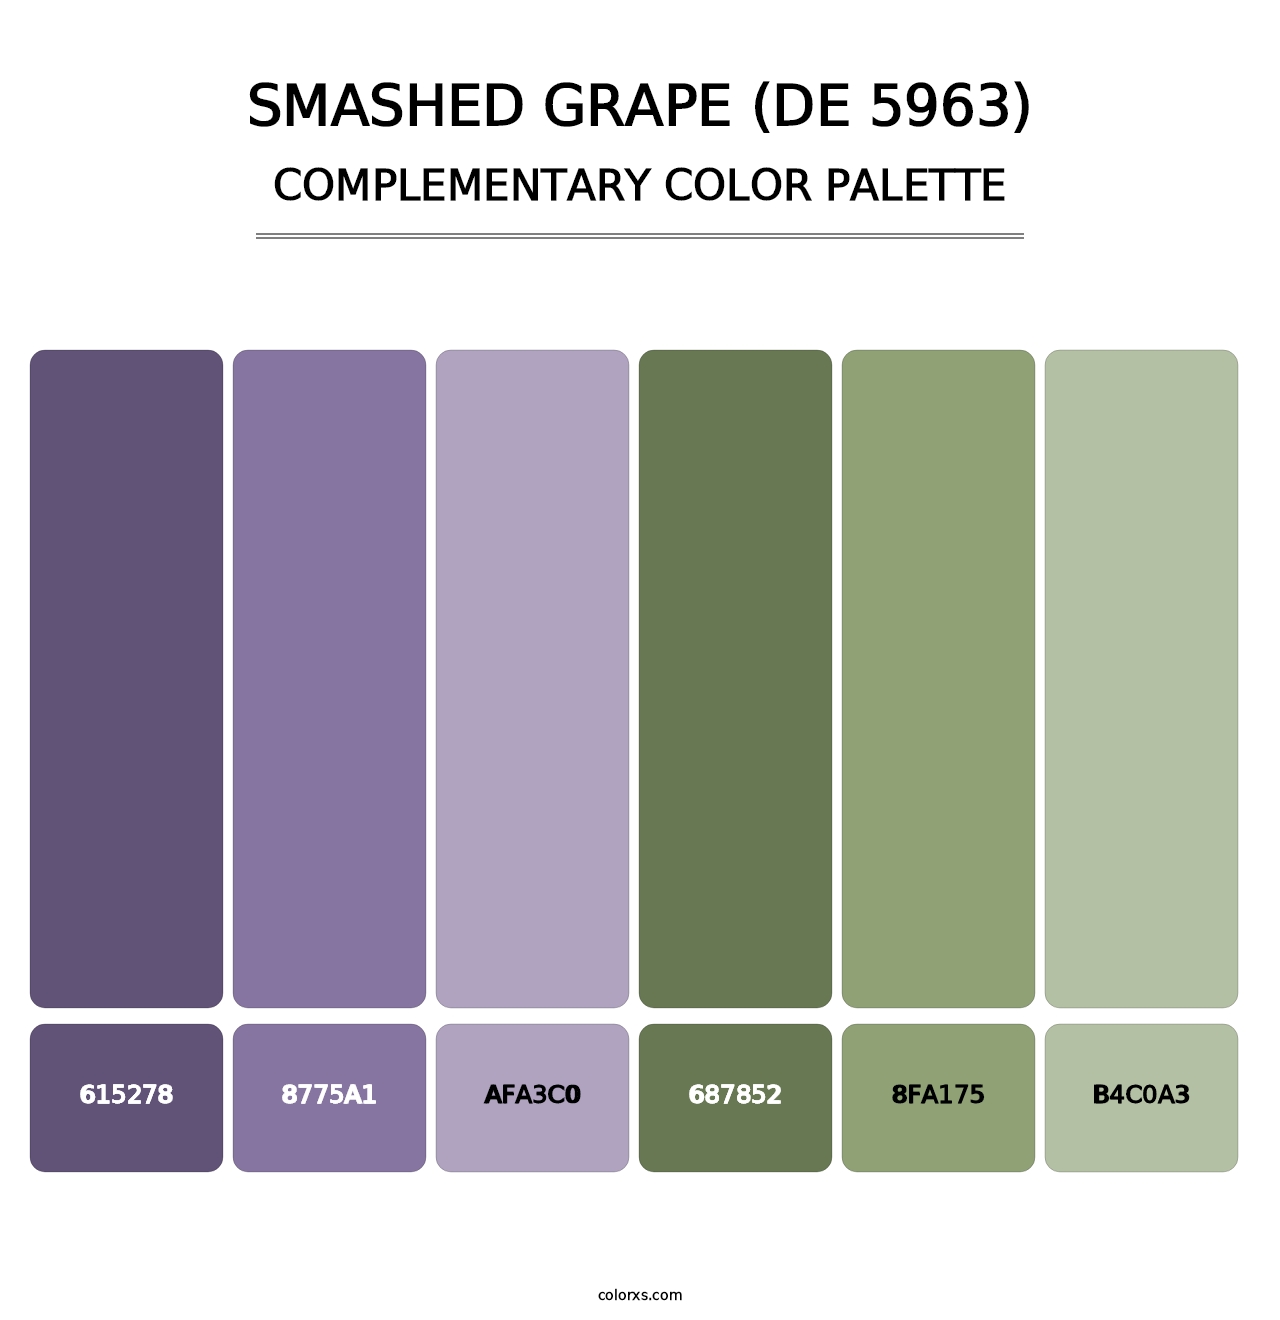 Smashed Grape (DE 5963) - Complementary Color Palette